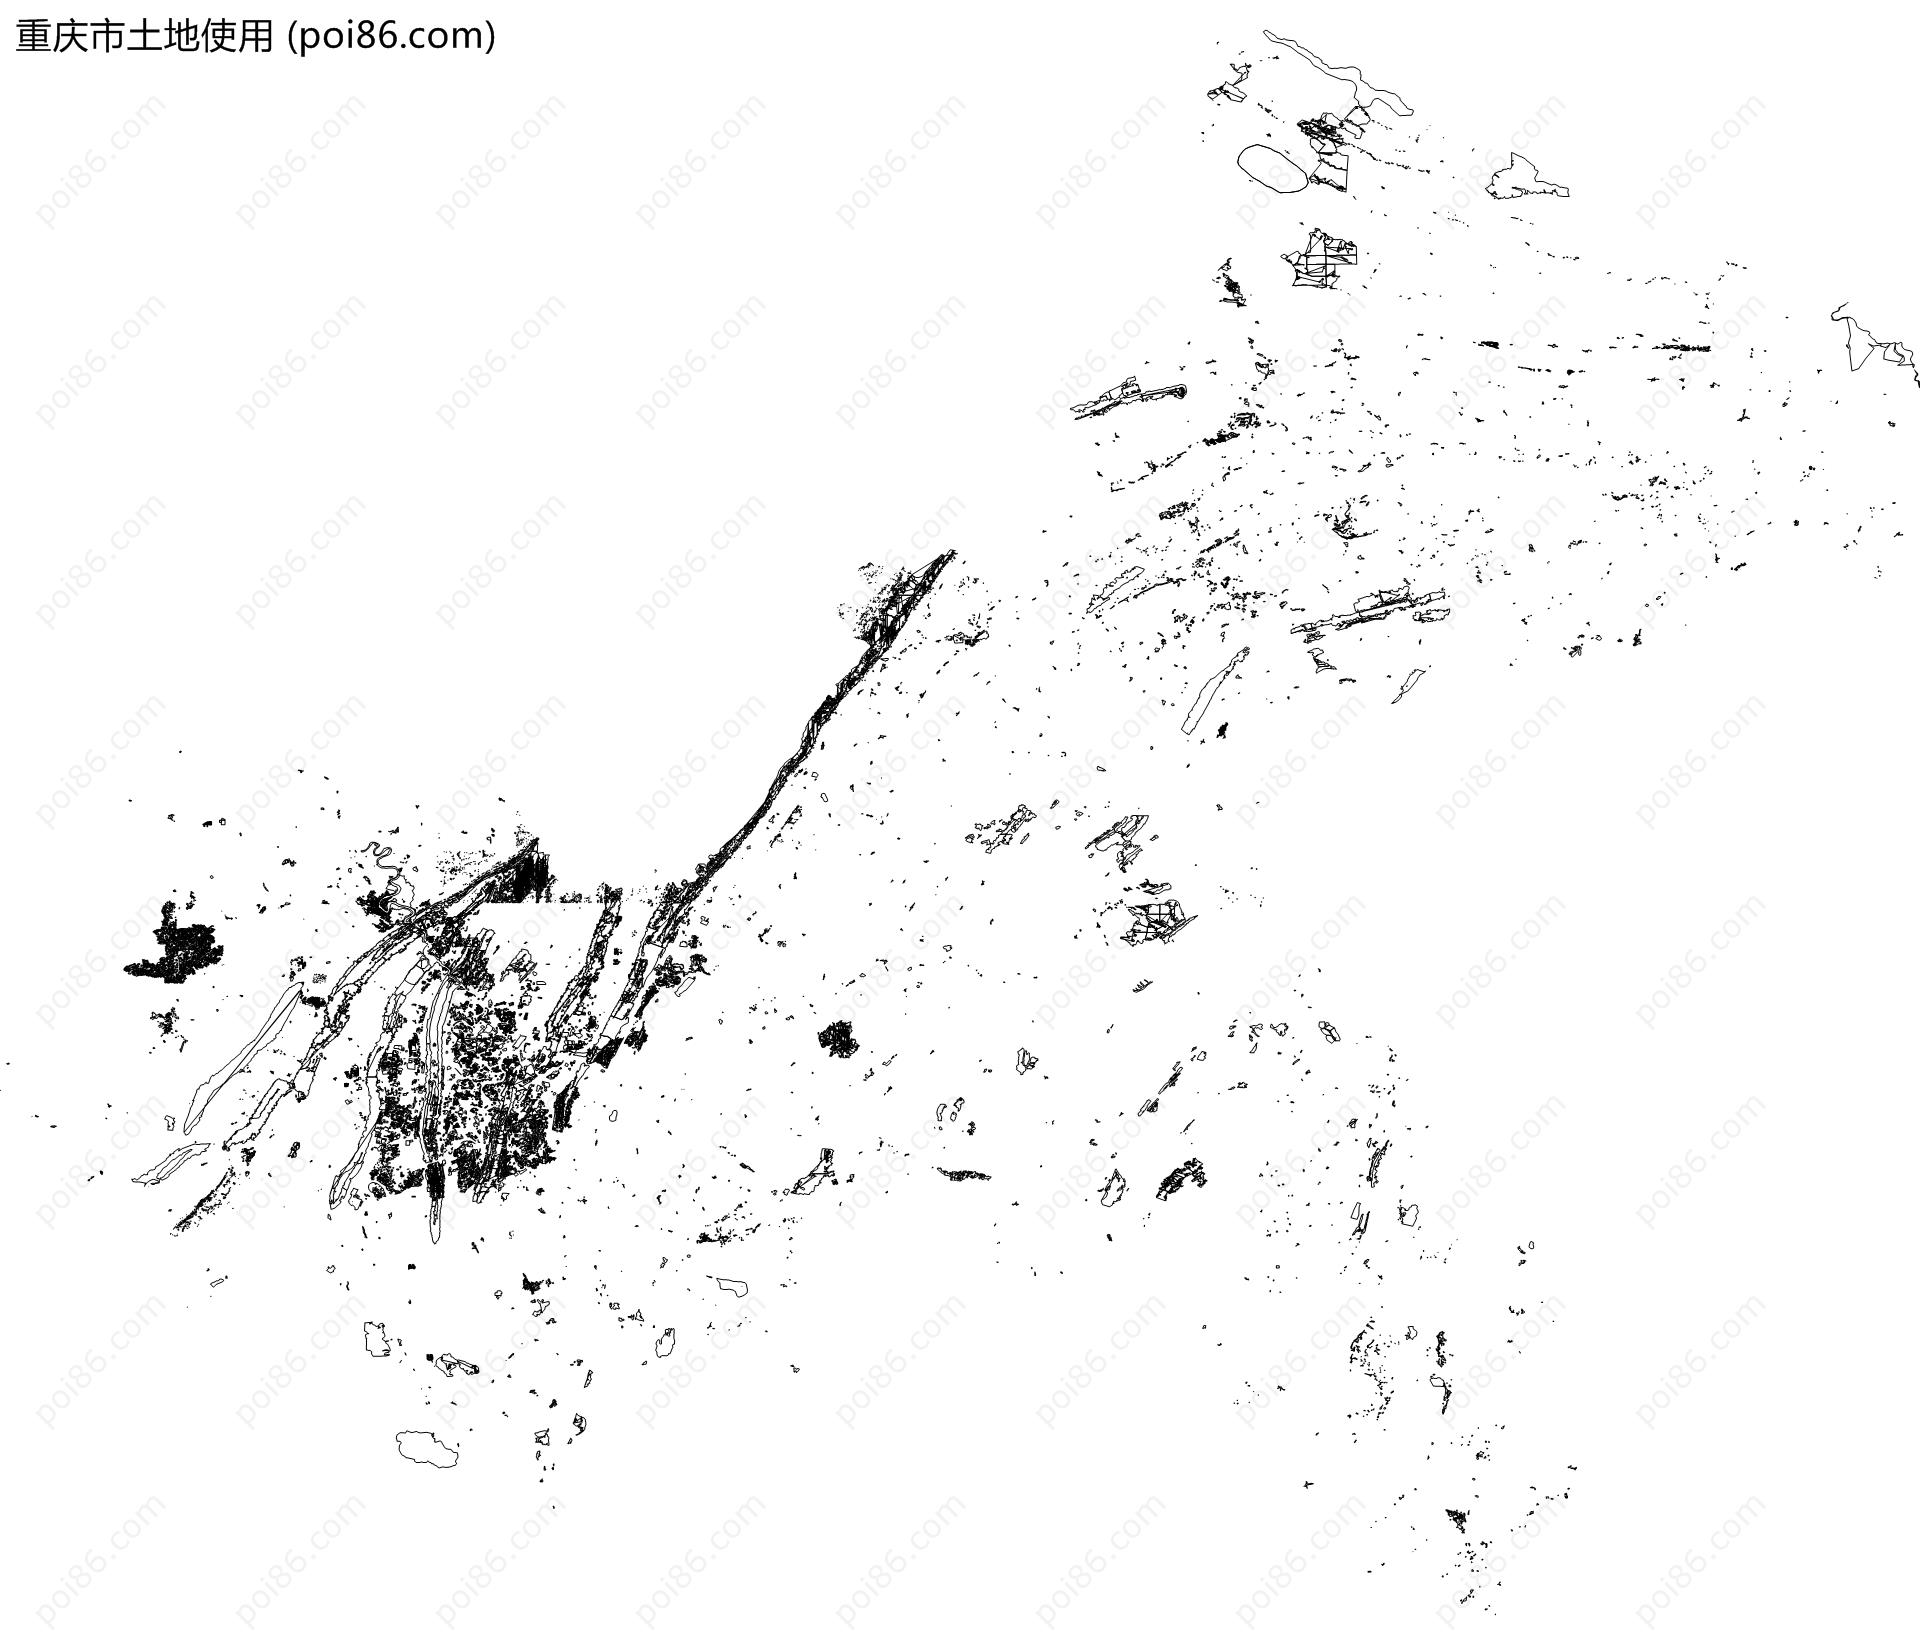 重庆市土地使用地图